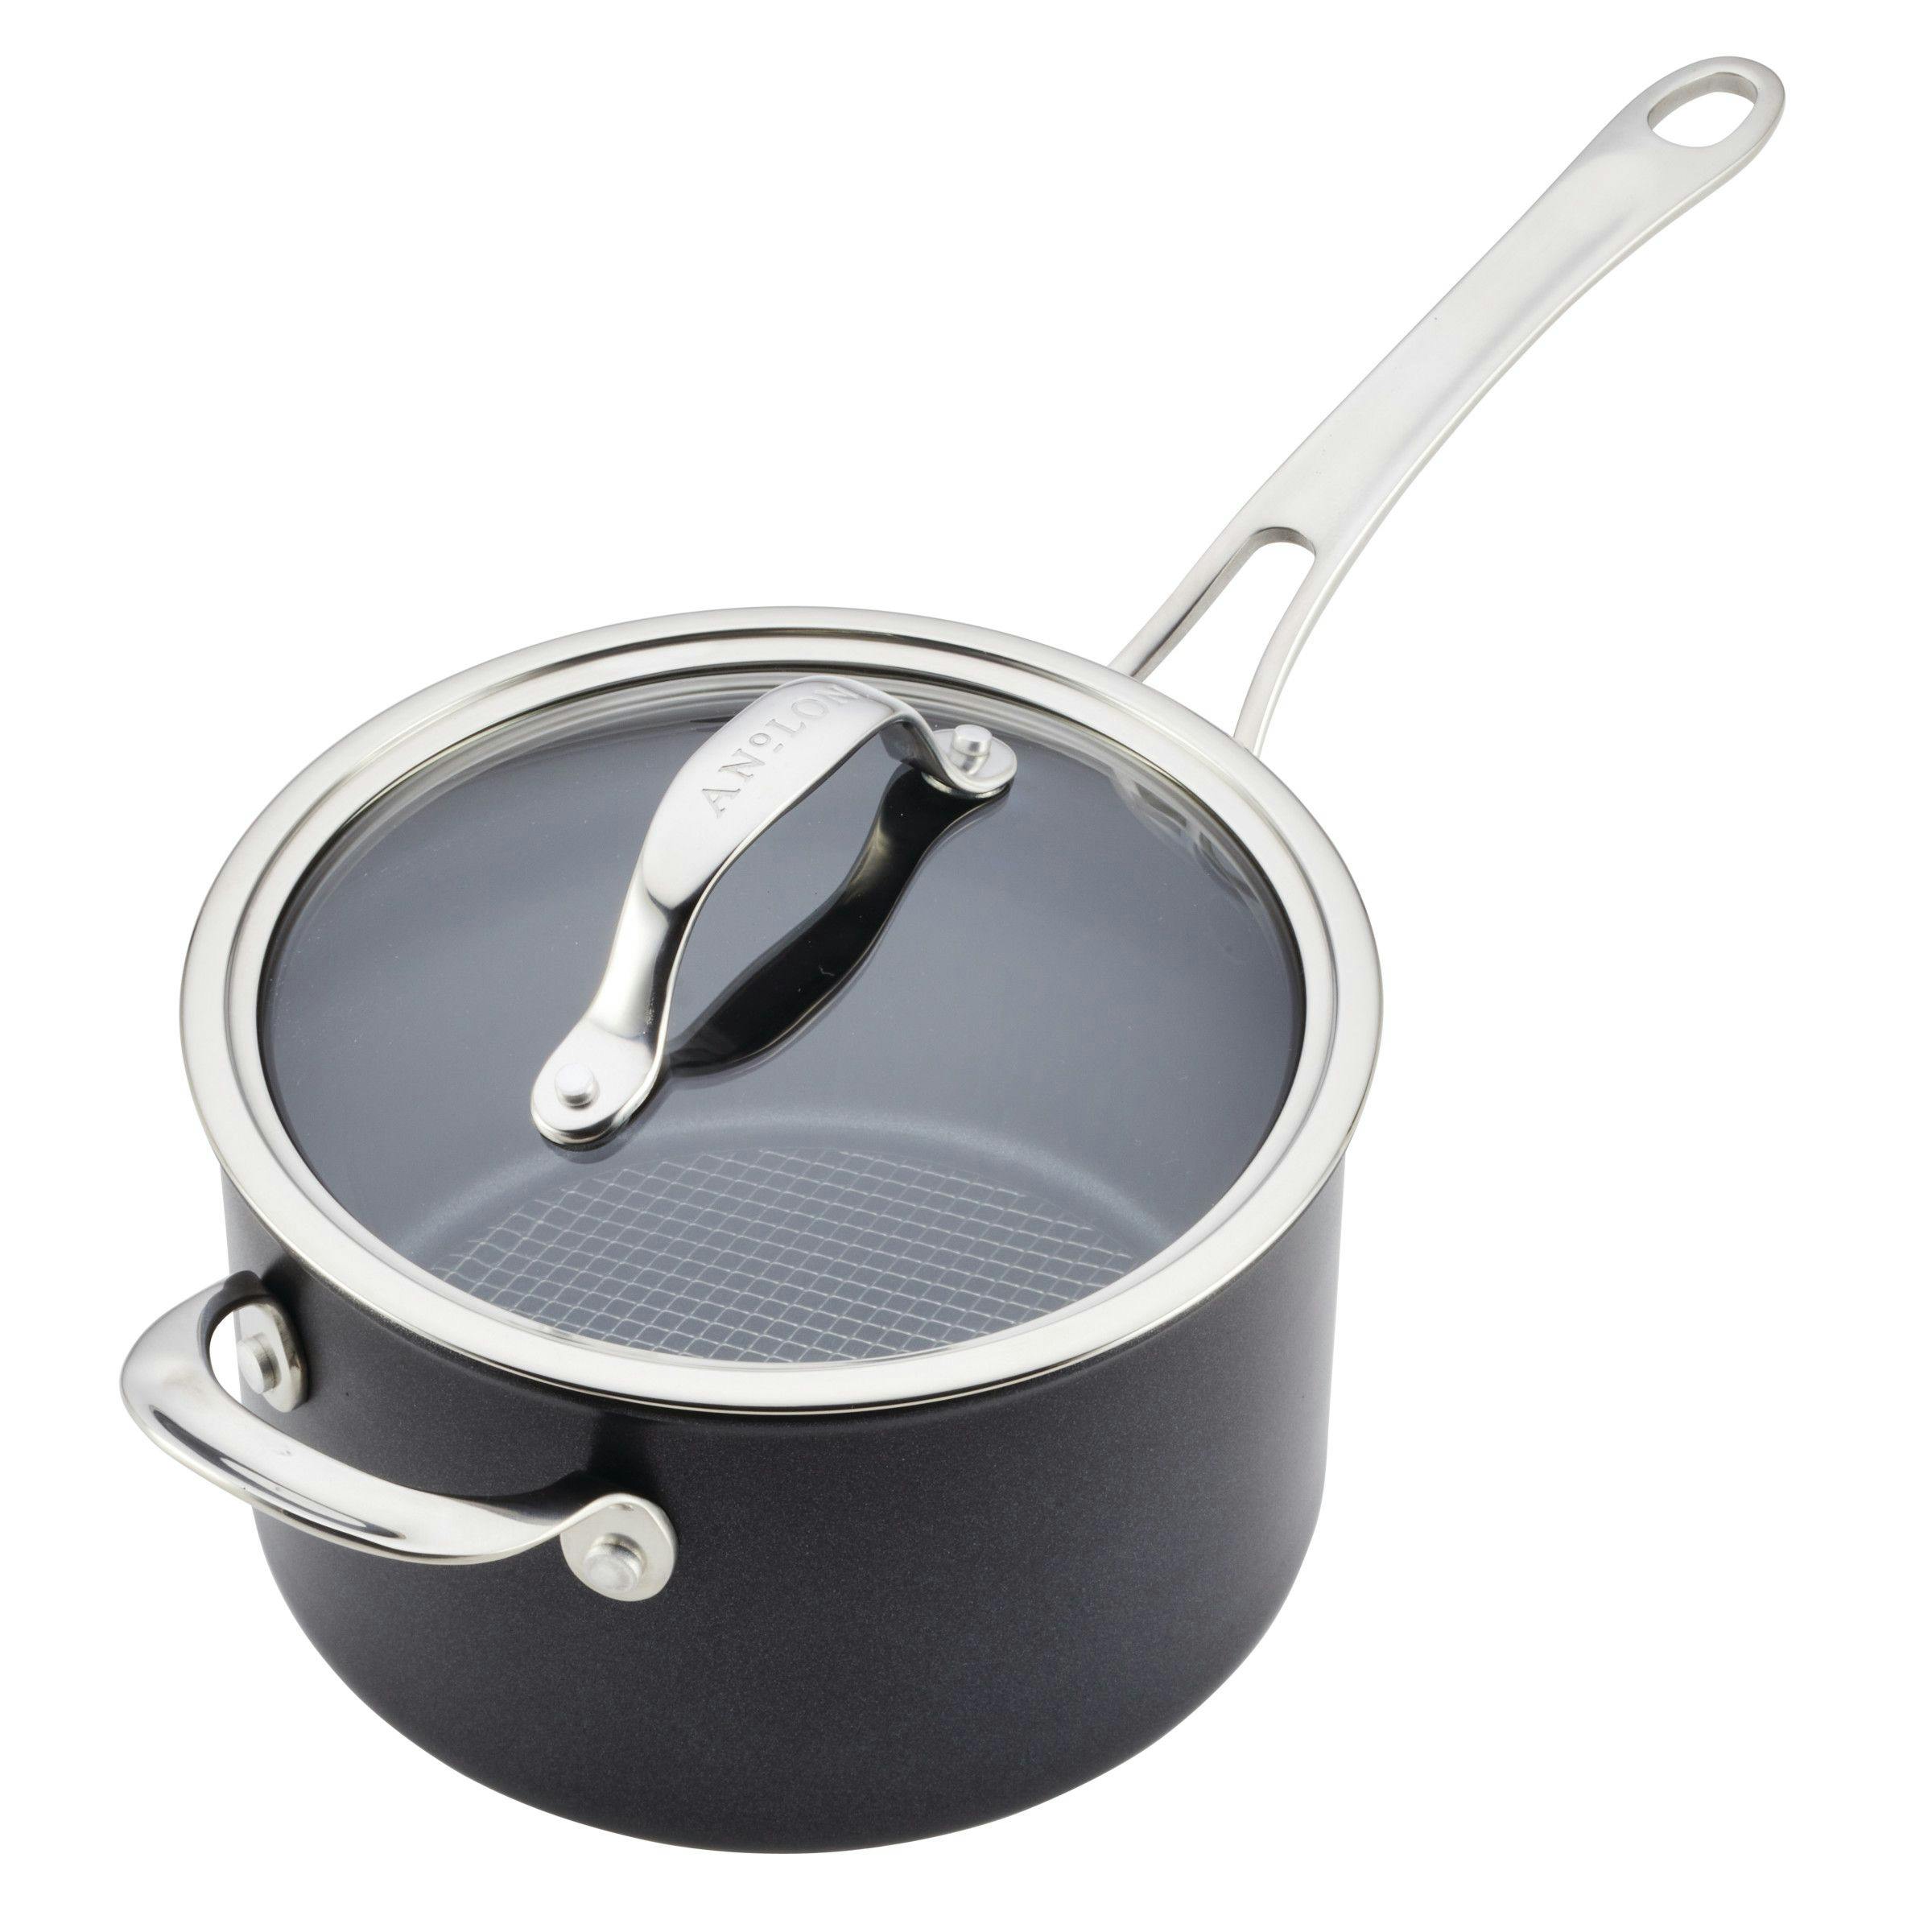 Anolon X Hybrid Nonstick Aluminum Nonstick Cookware Induction Pots and Pans Set · 10 Piece Set